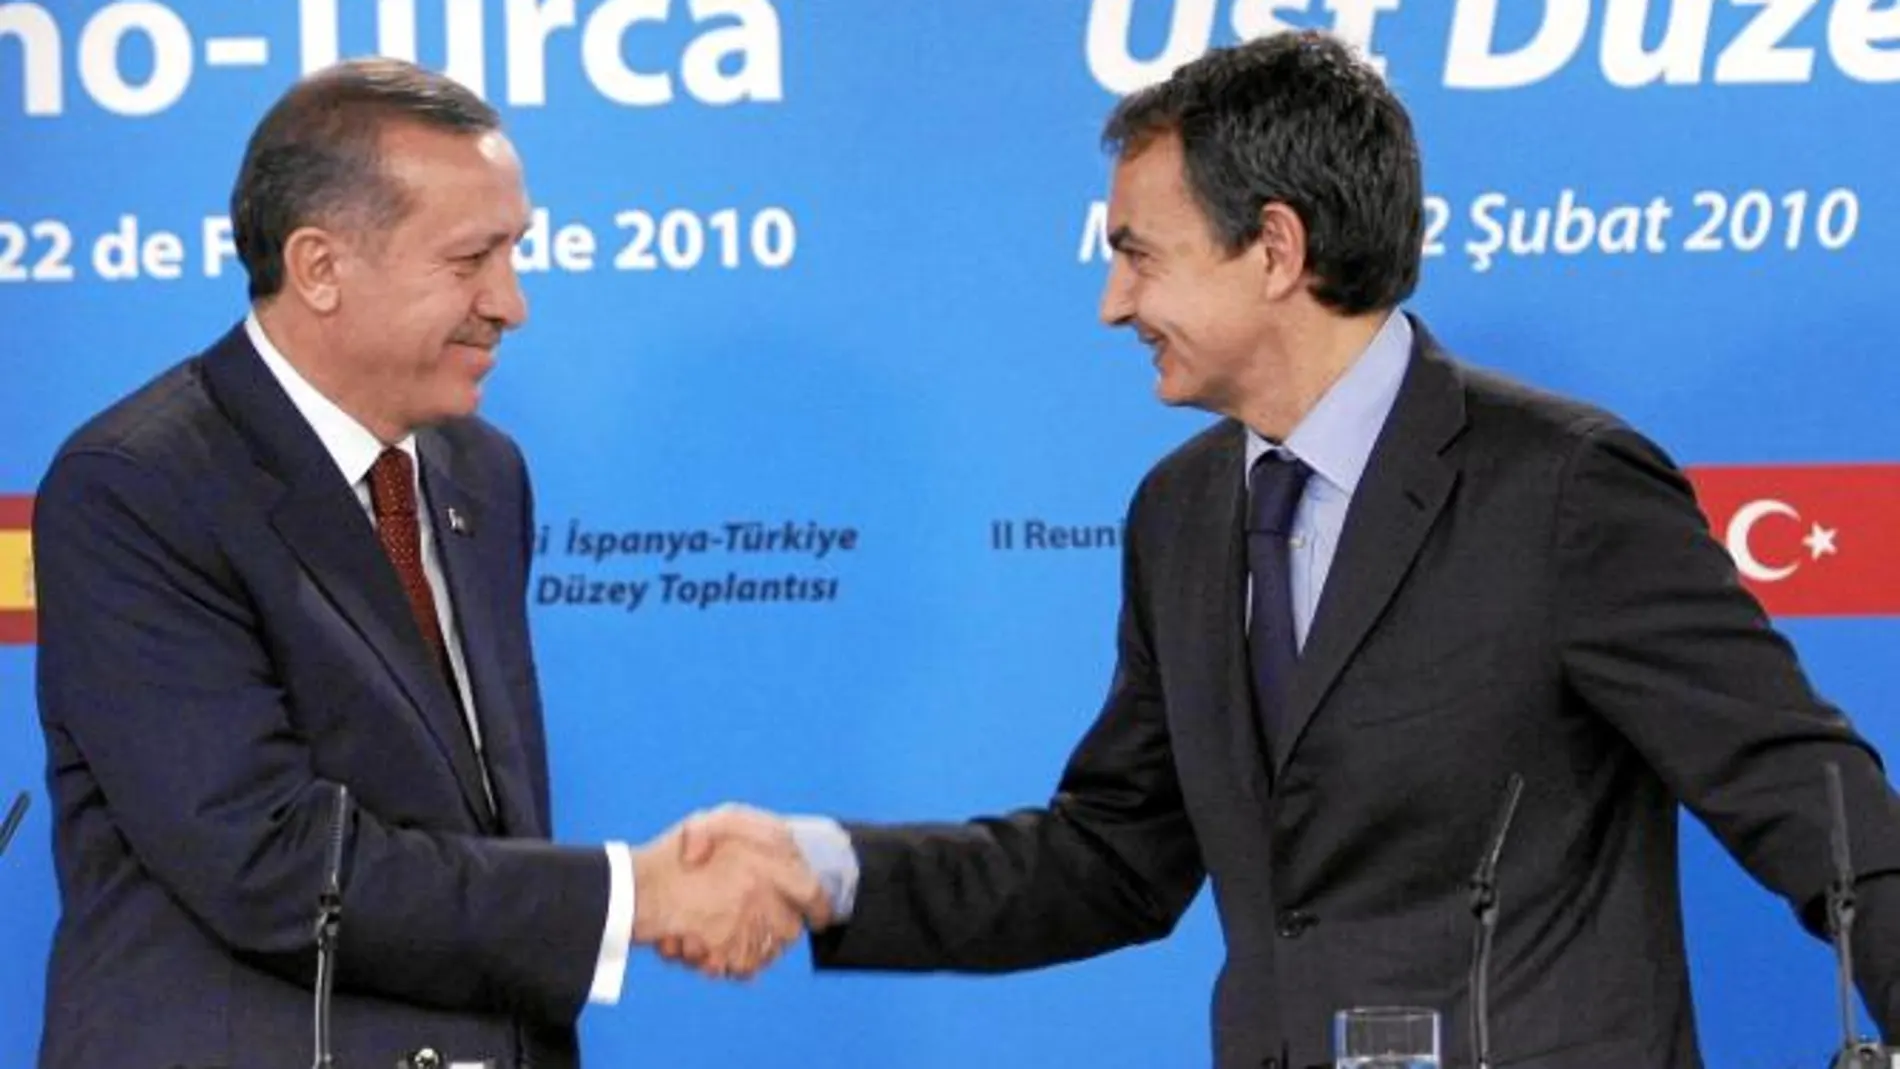 Zapatero y Erdogan, los dos copatrocinadores de la idea de la Alianza de Civilizaciones